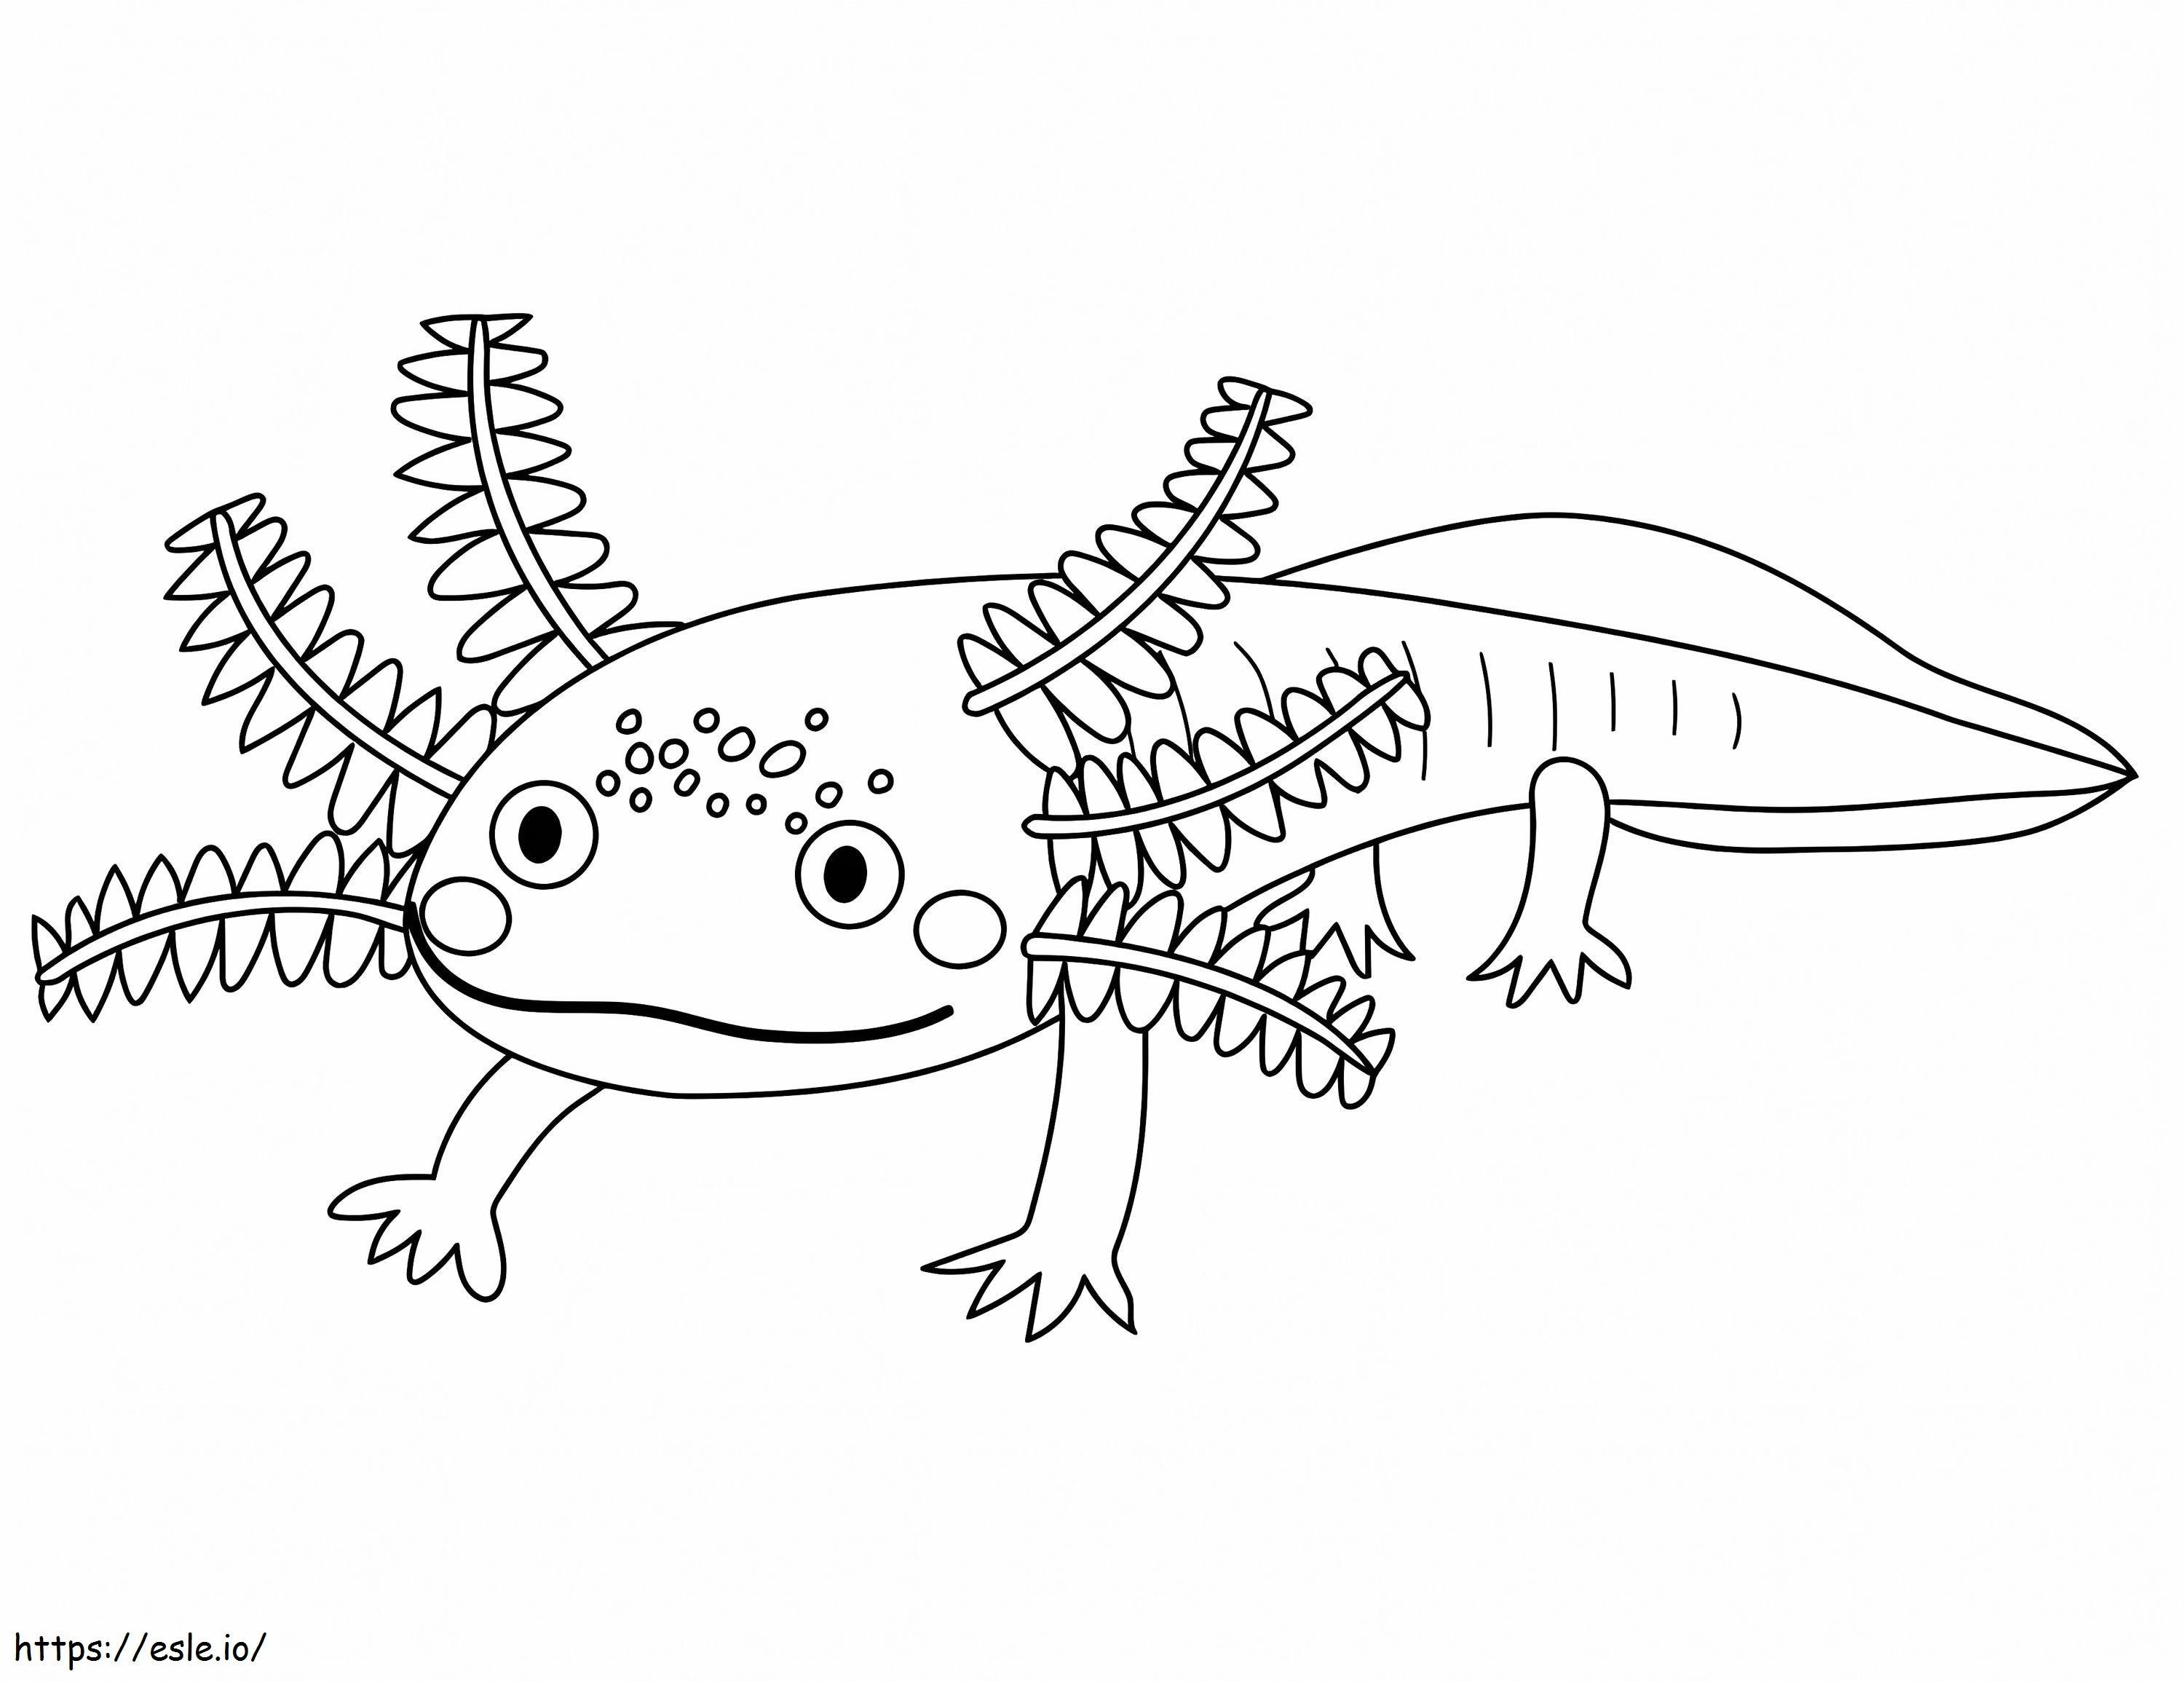 Axolotl divertente da colorare